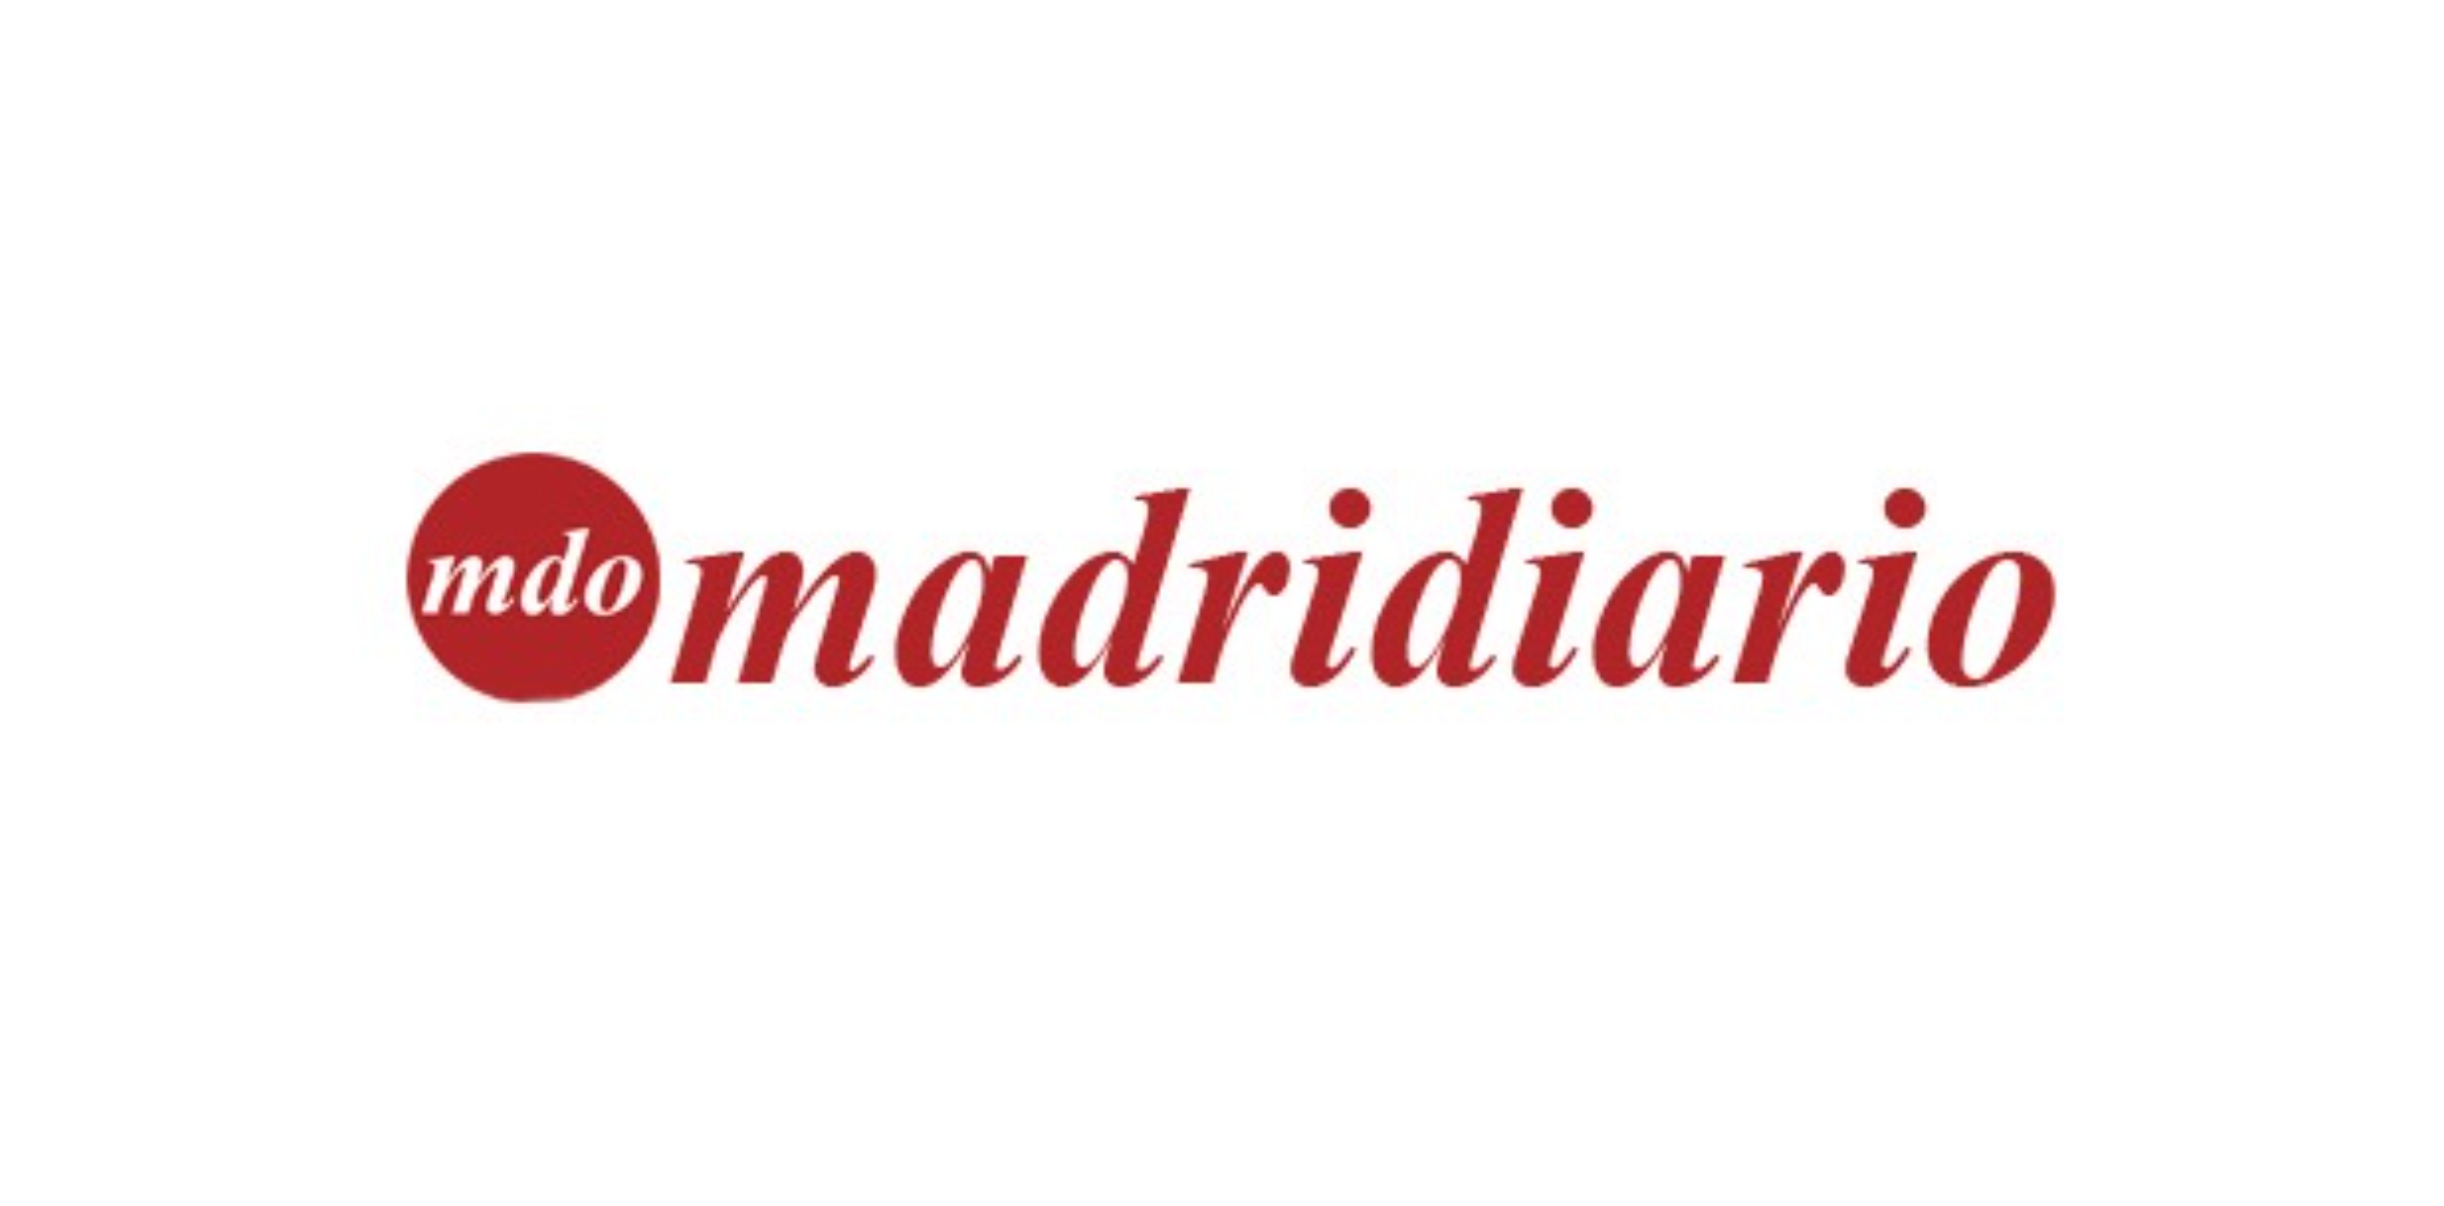 madridiario 1